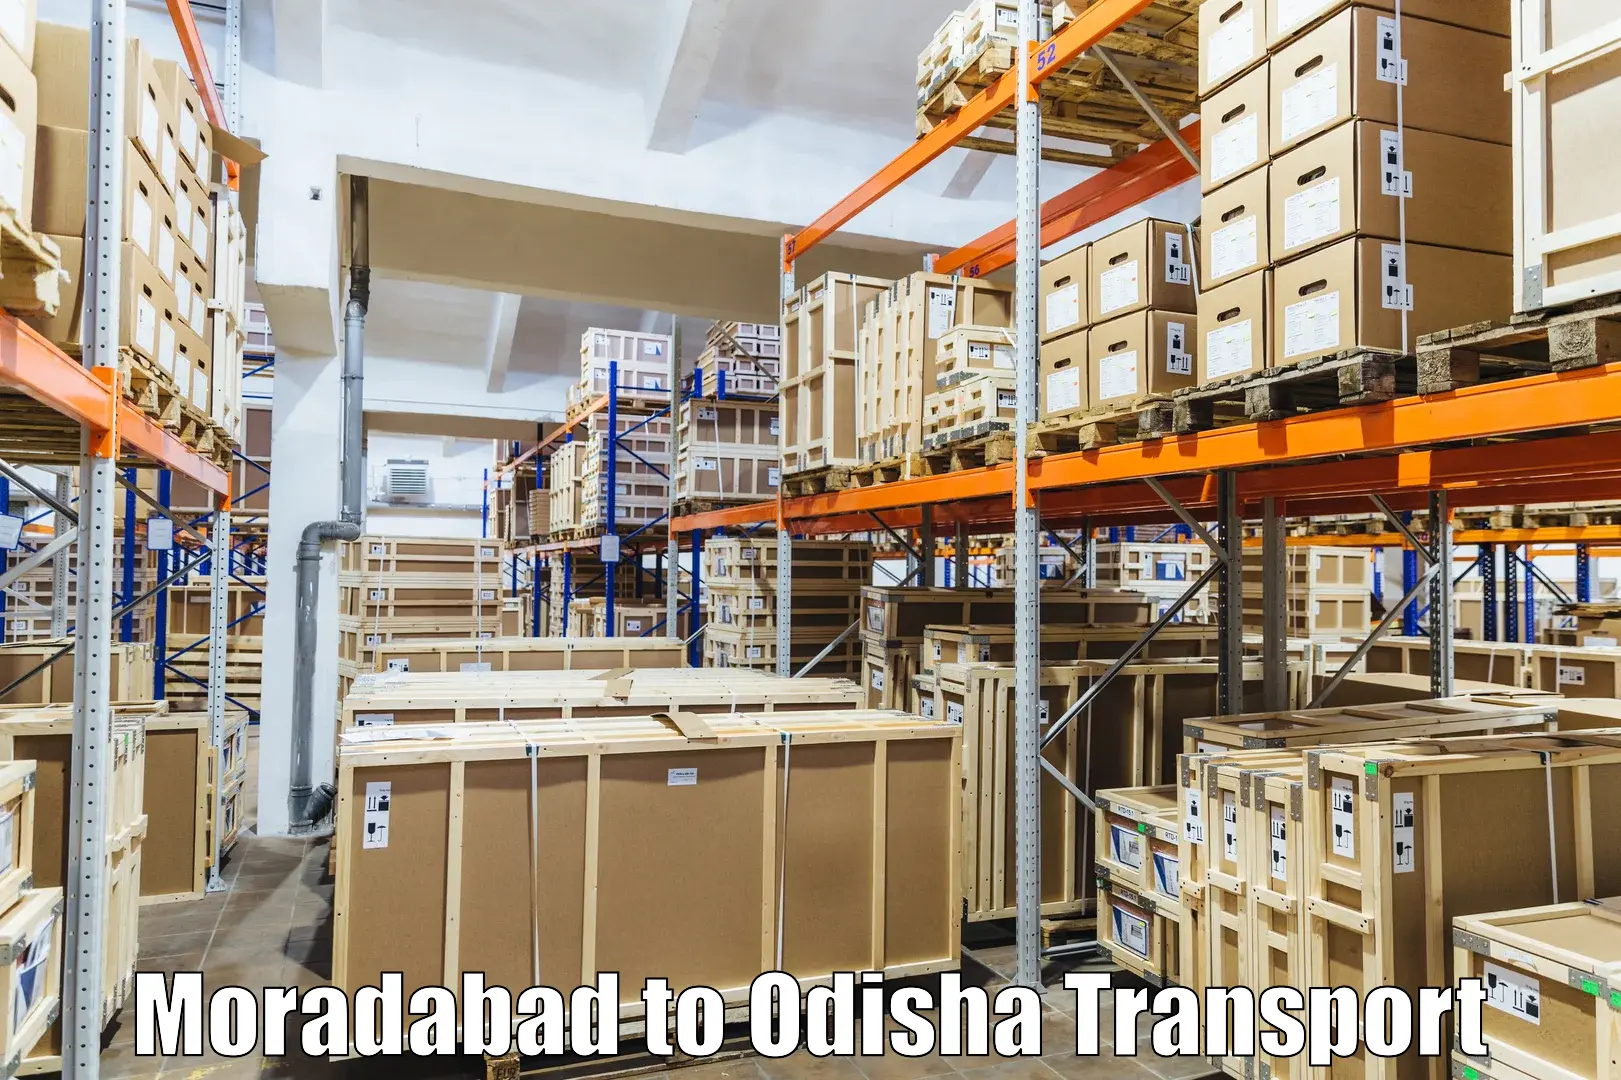 Domestic goods transportation services Moradabad to Bhutasarasingi